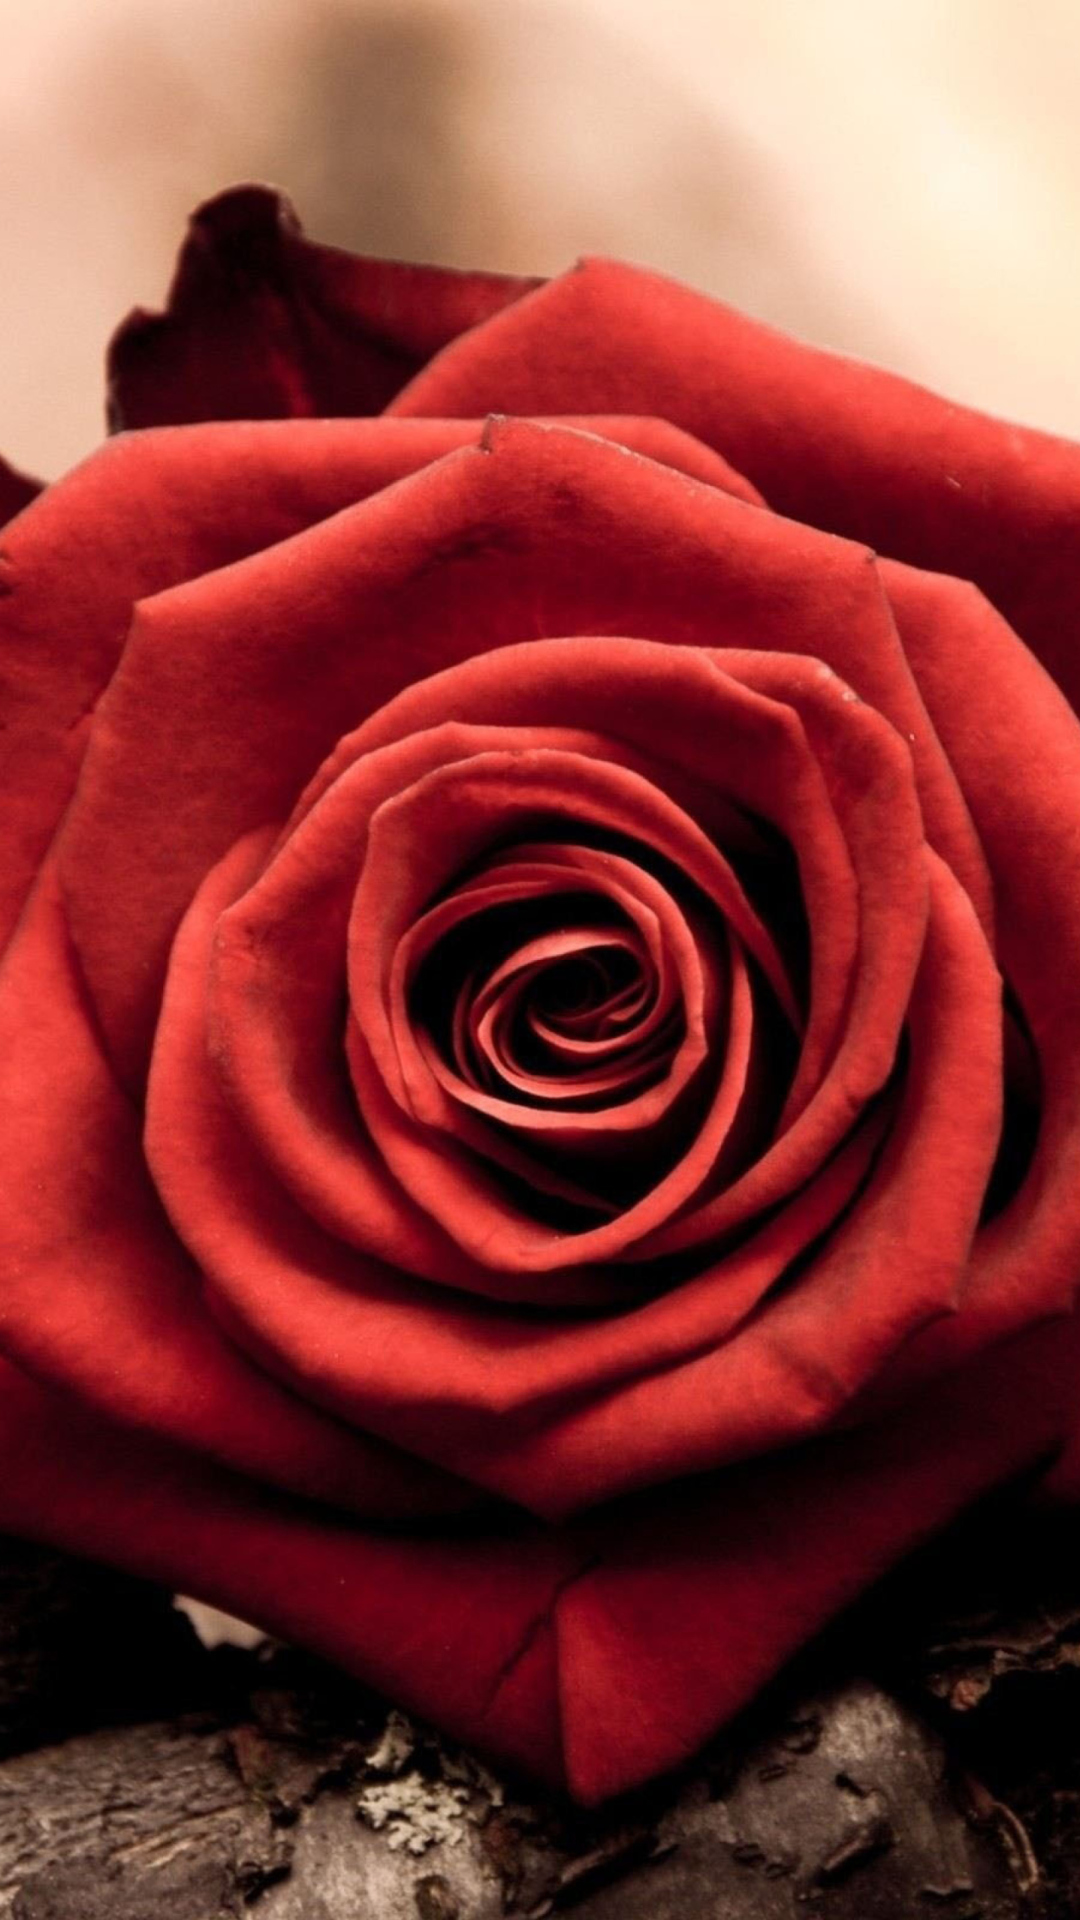 Rose Symbol Of Love wallpaper 1080x1920